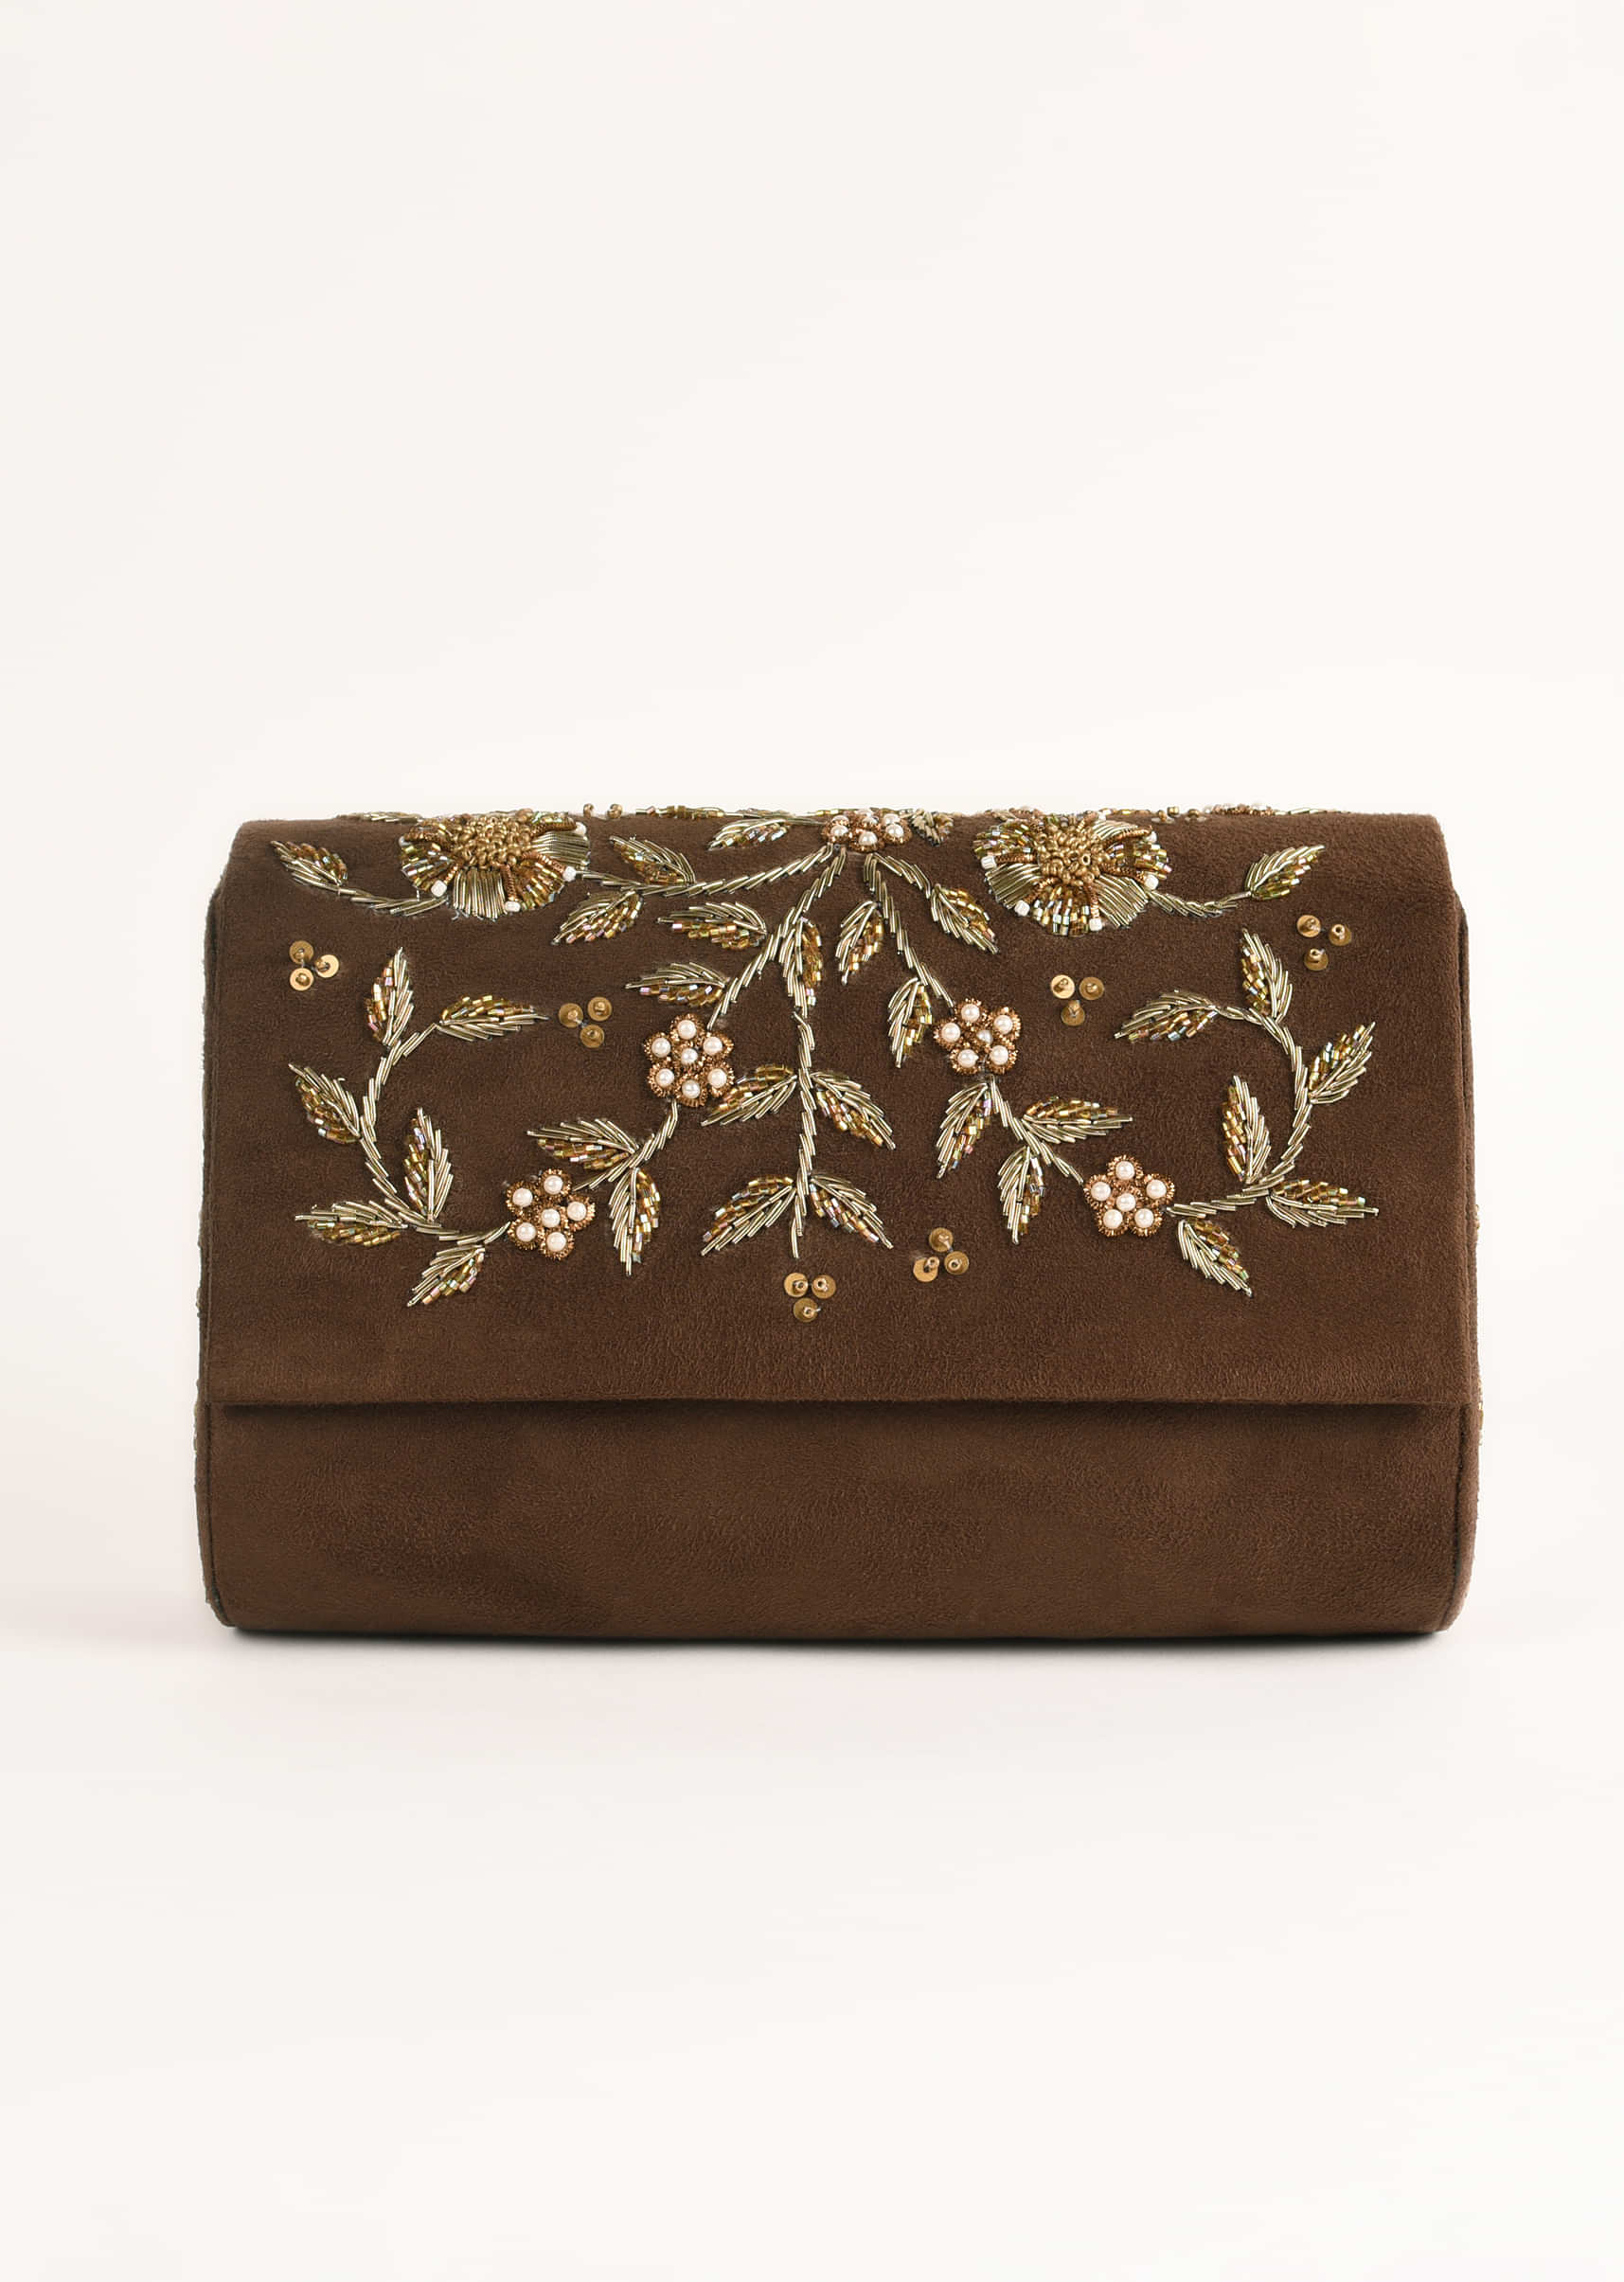 Espresso Brown Clutch In Suede With Zardosi Embroidered Floral Motifs Online - Kalki Fashion